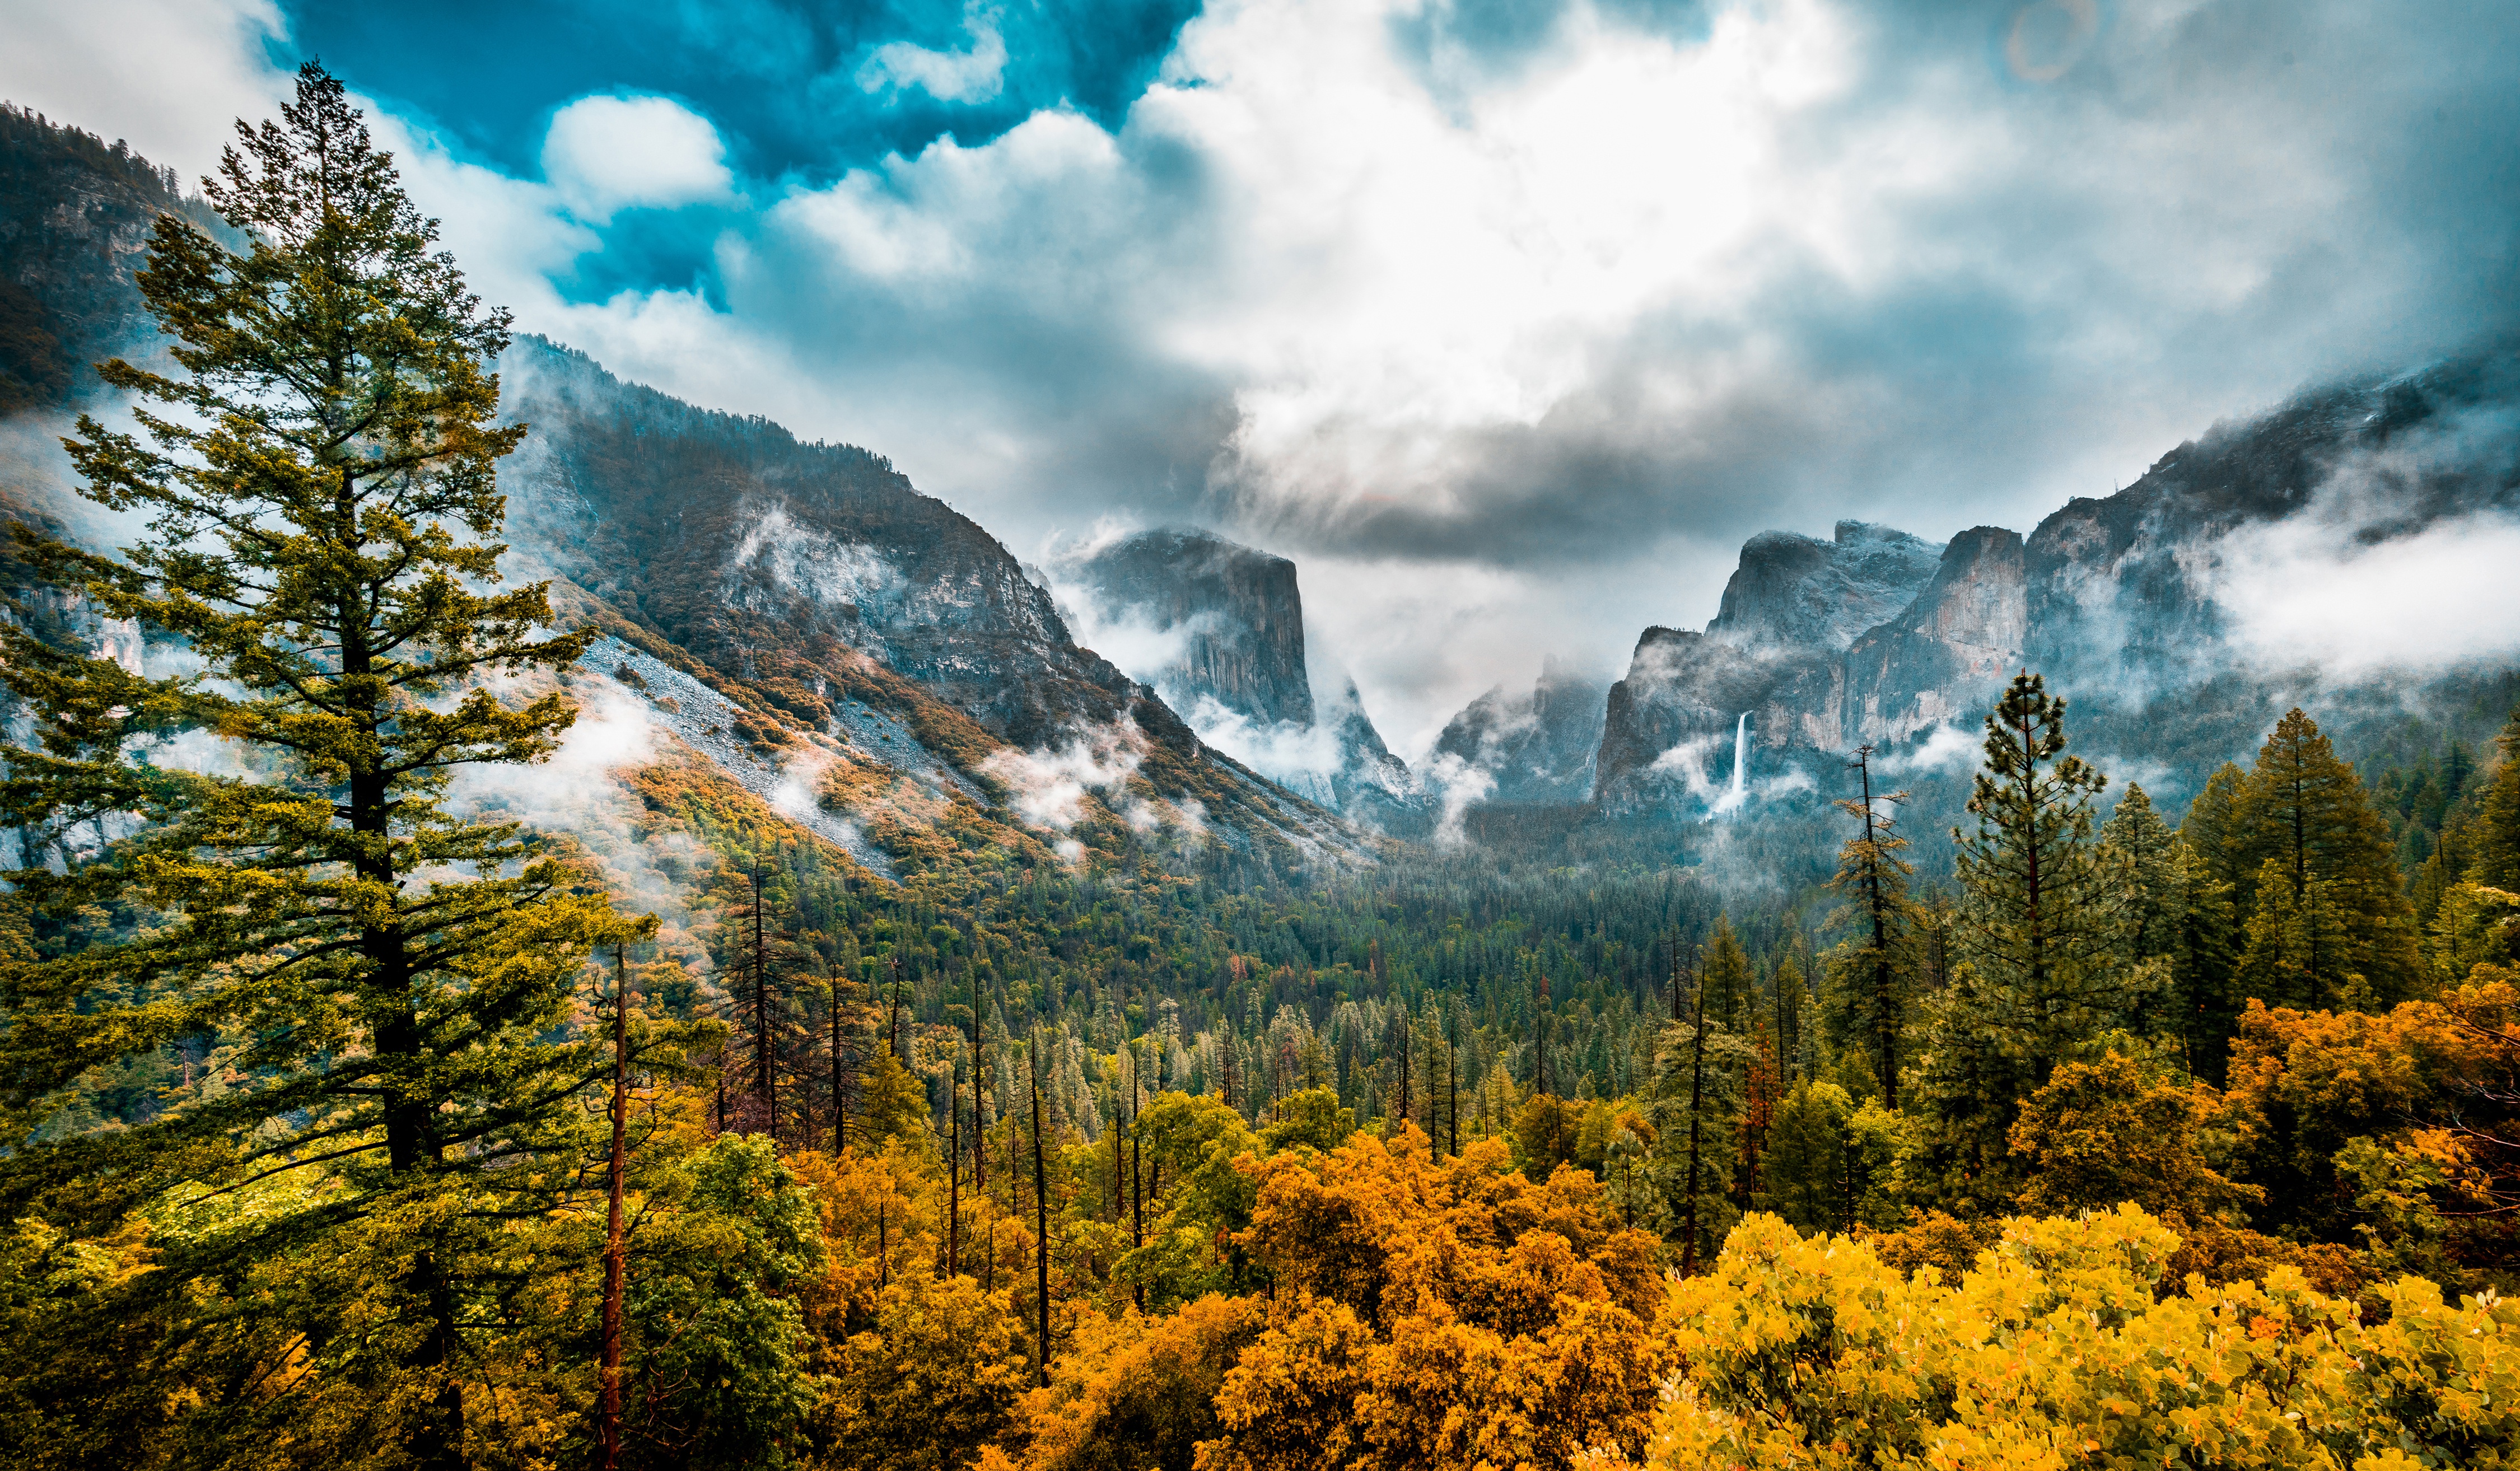 壁紙 4500x2627 アメリカ合衆国 森林 秋 風景写真 Sierra Nevada 木 ヨセミテ国立公園 雲 カリフォルニア州 谷 自然 ダウンロード 写真